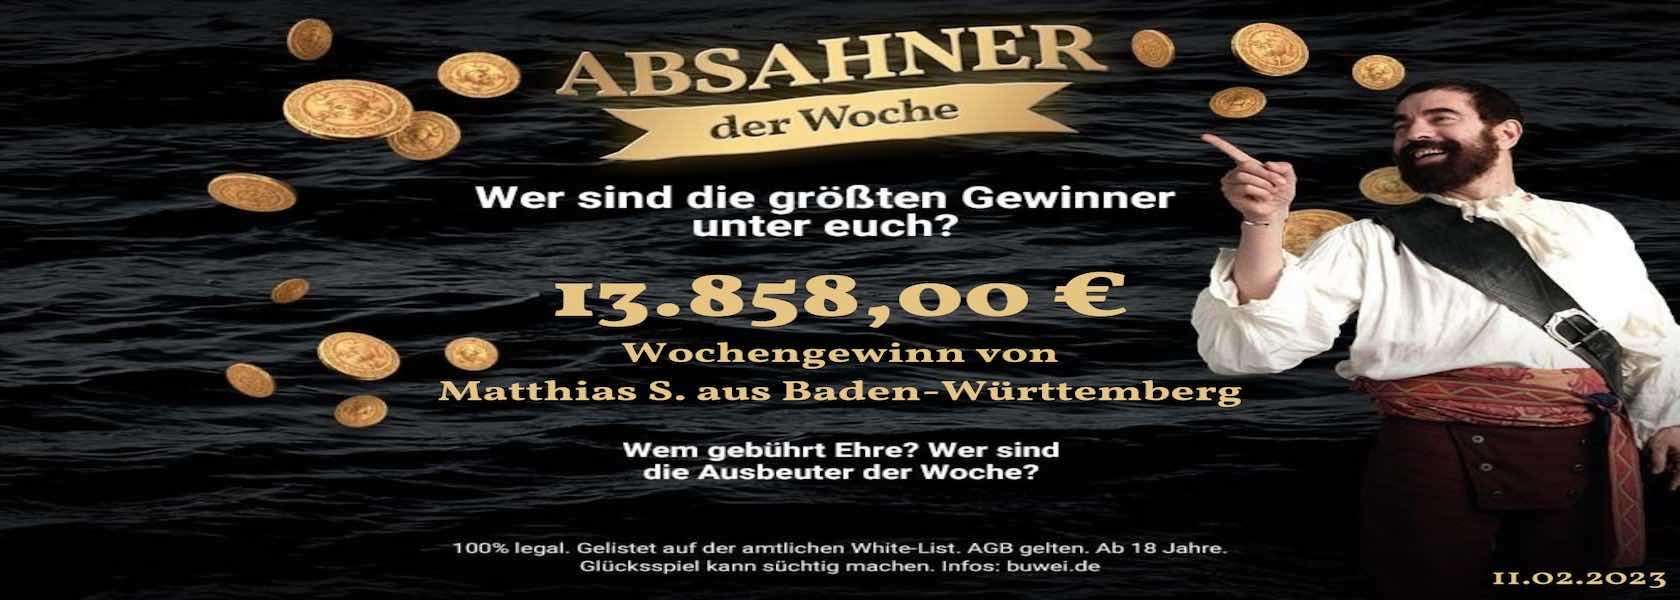 absahner-der-woche-11022023-jpi-1680x600